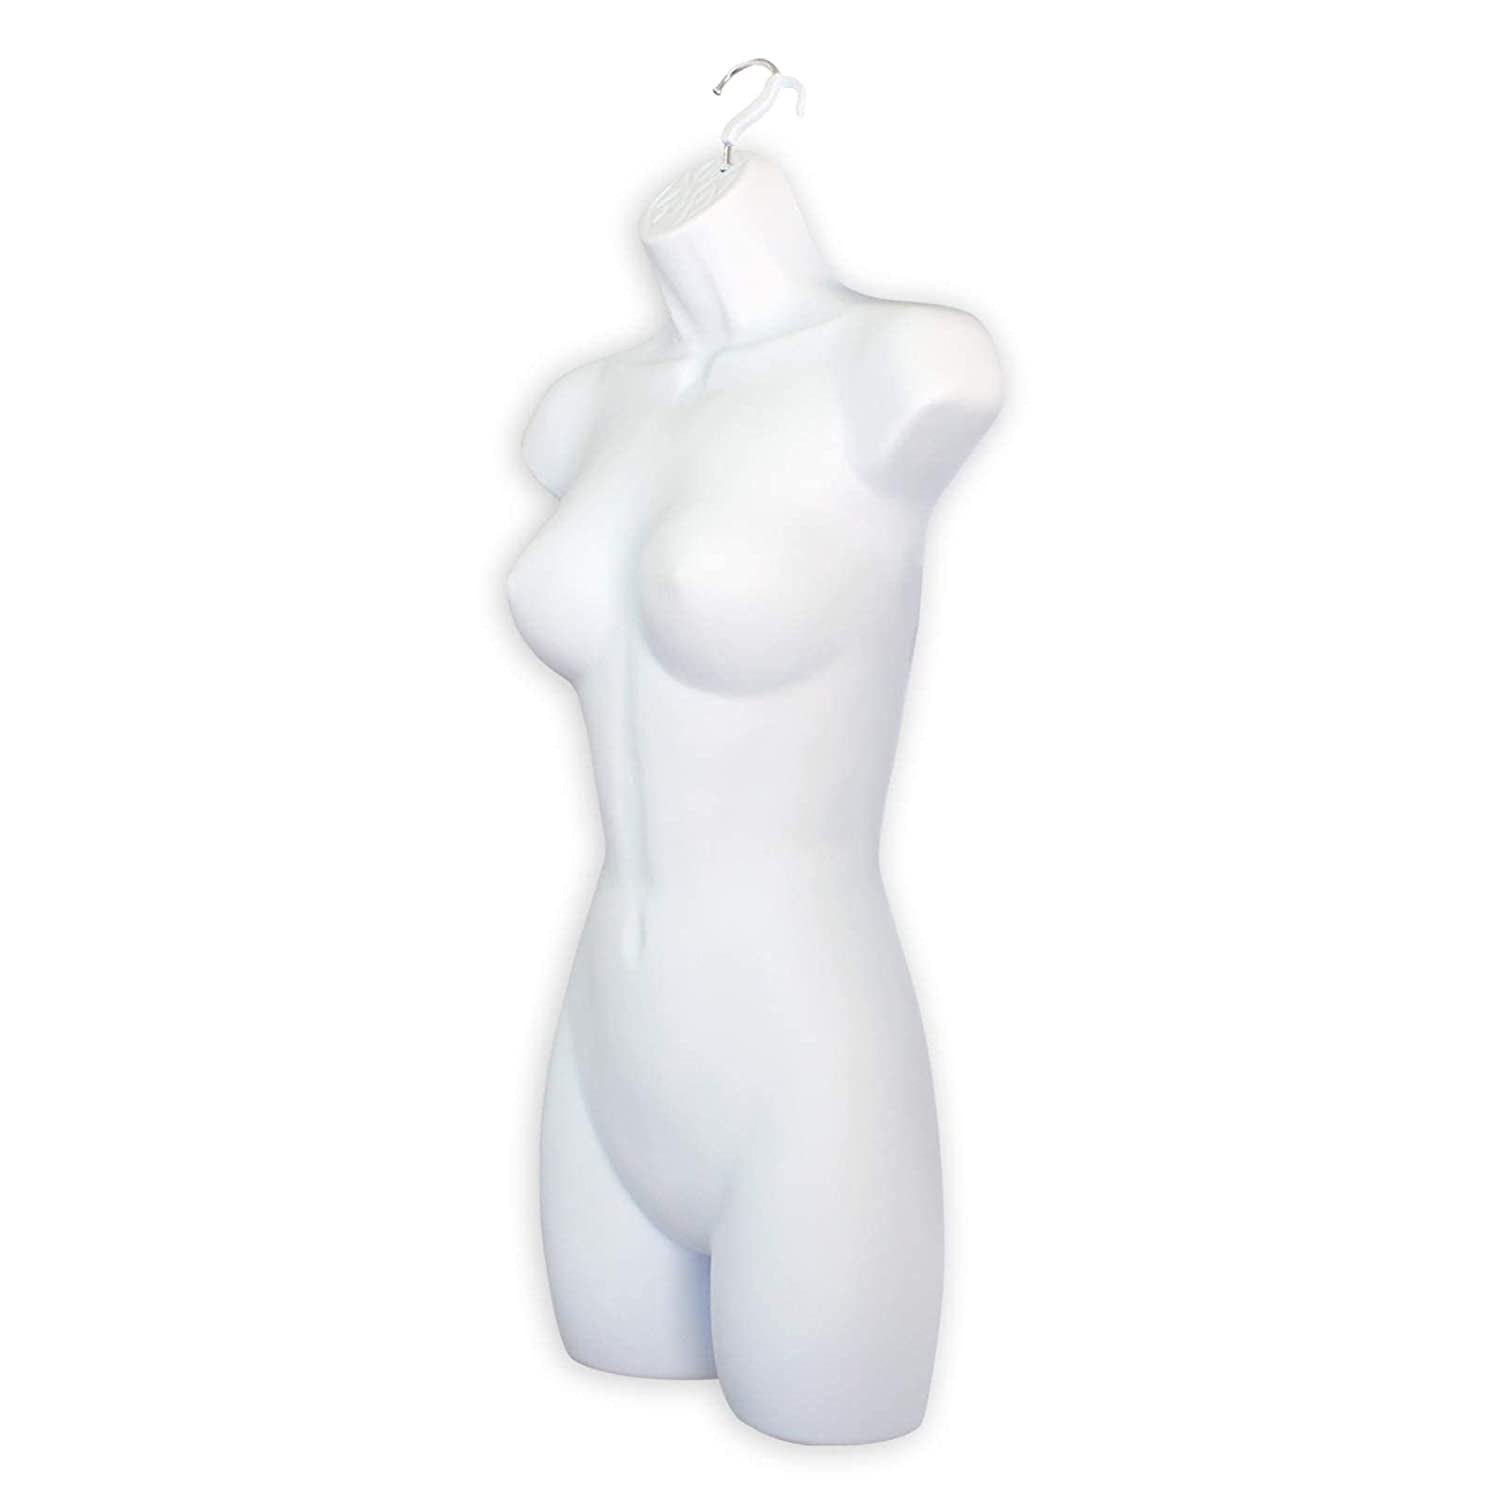 Mannequin White Hanger Female Full Body Torso Hollow Back Dress